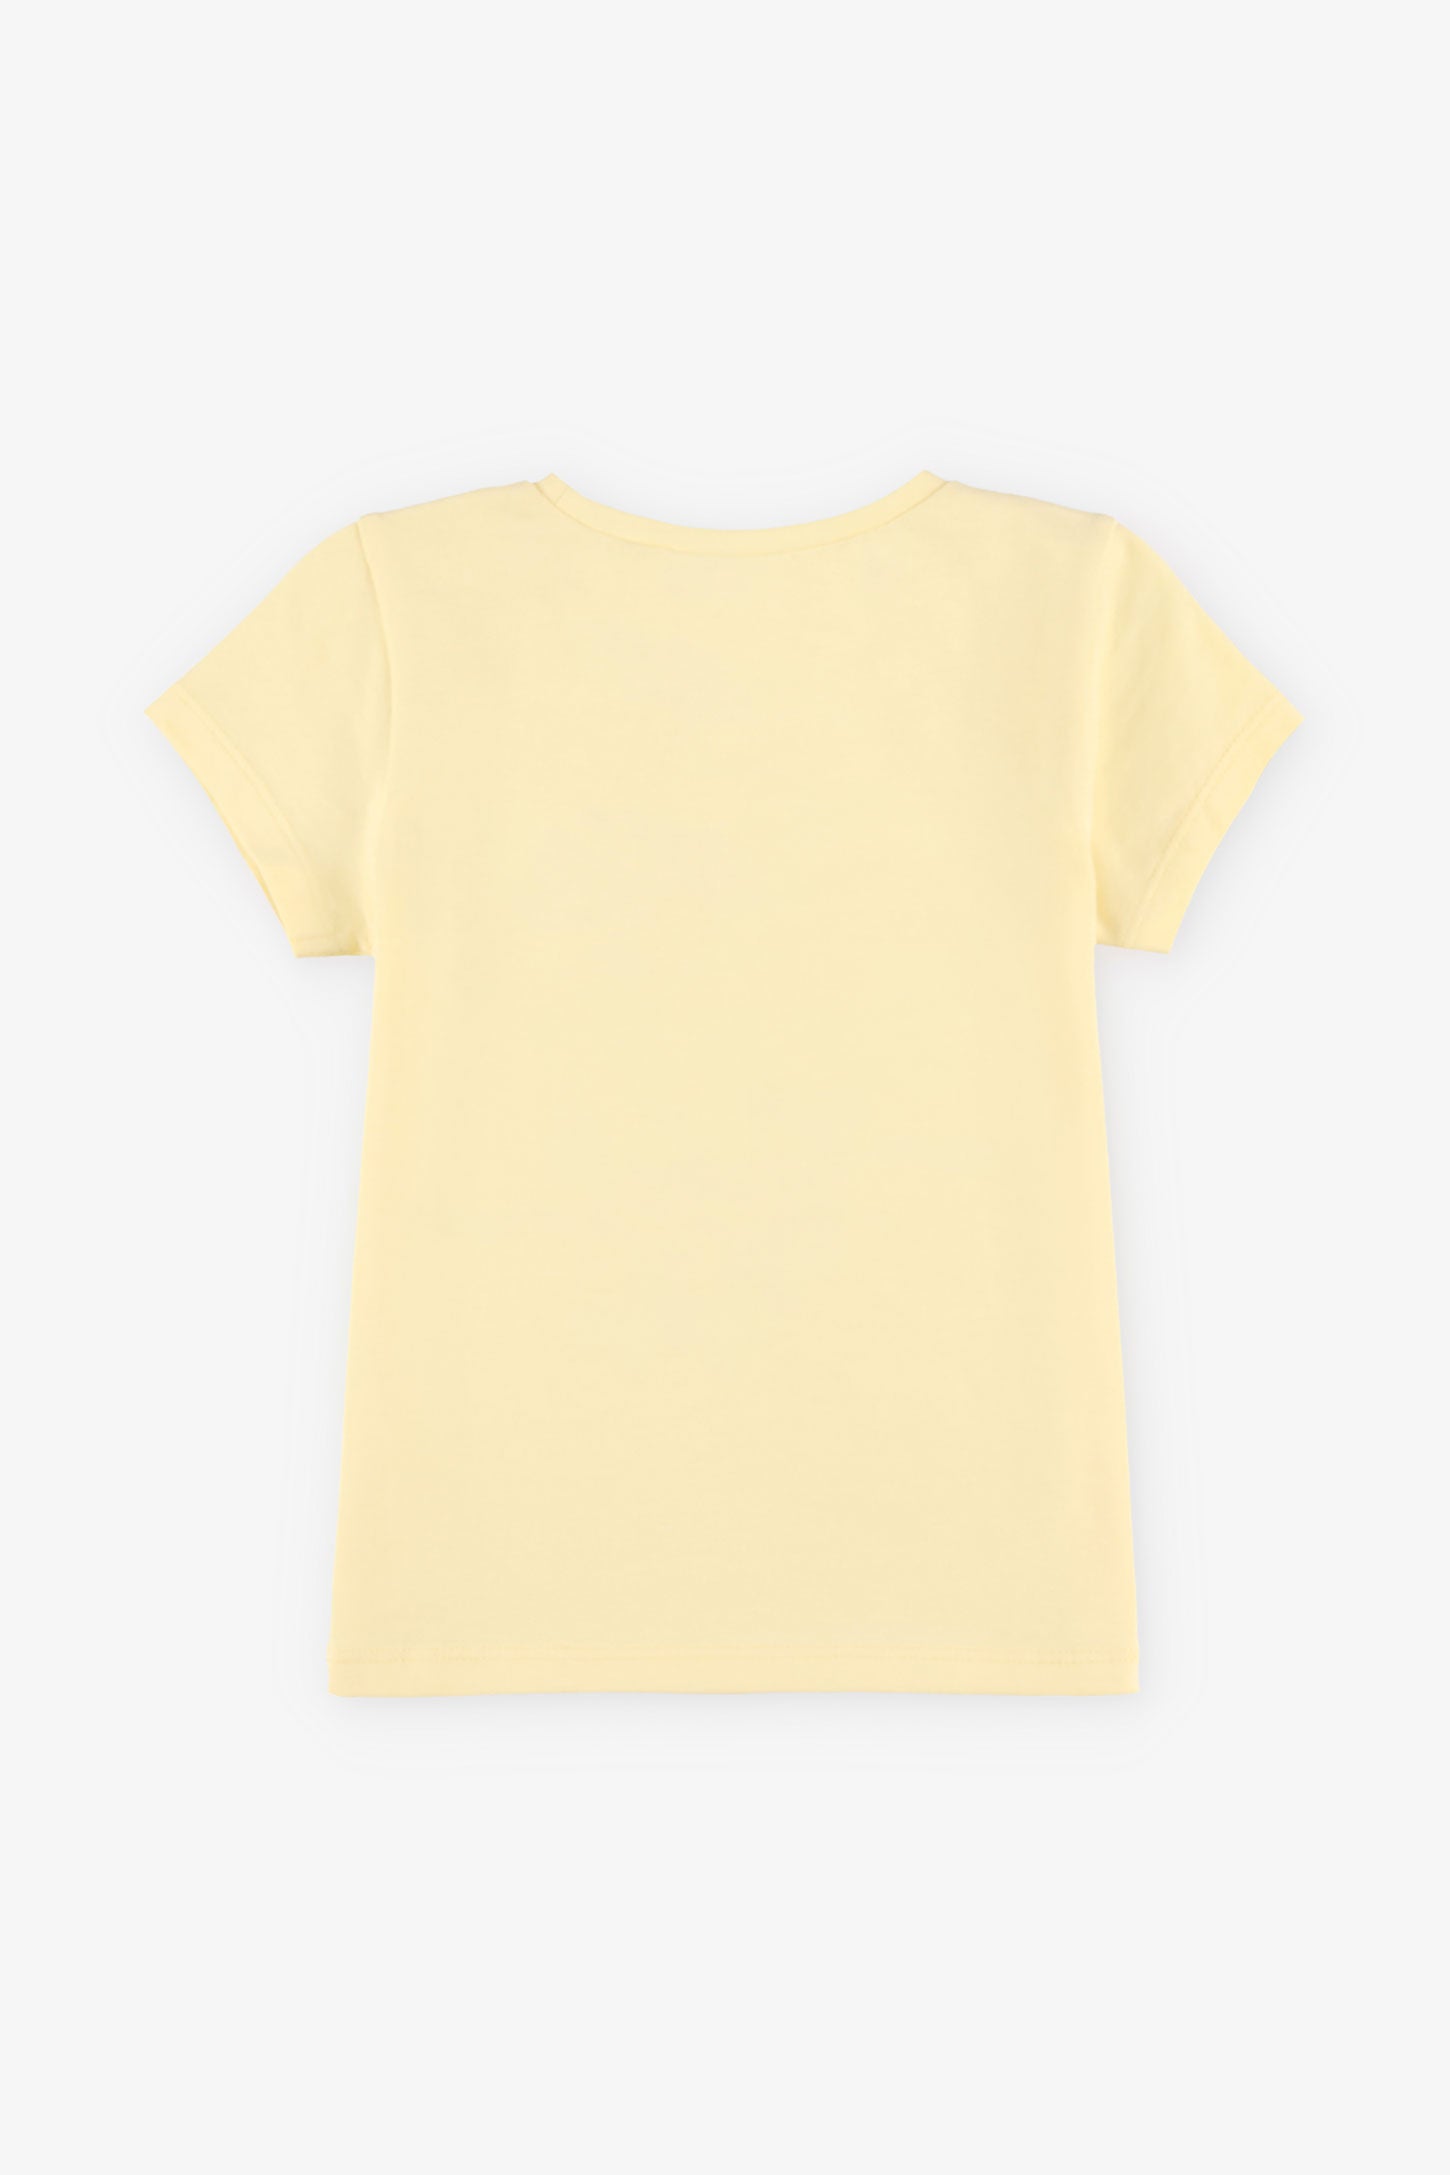 T-shirt rond imprimé coton, 2/15$ - Bébé fille && JAUNE